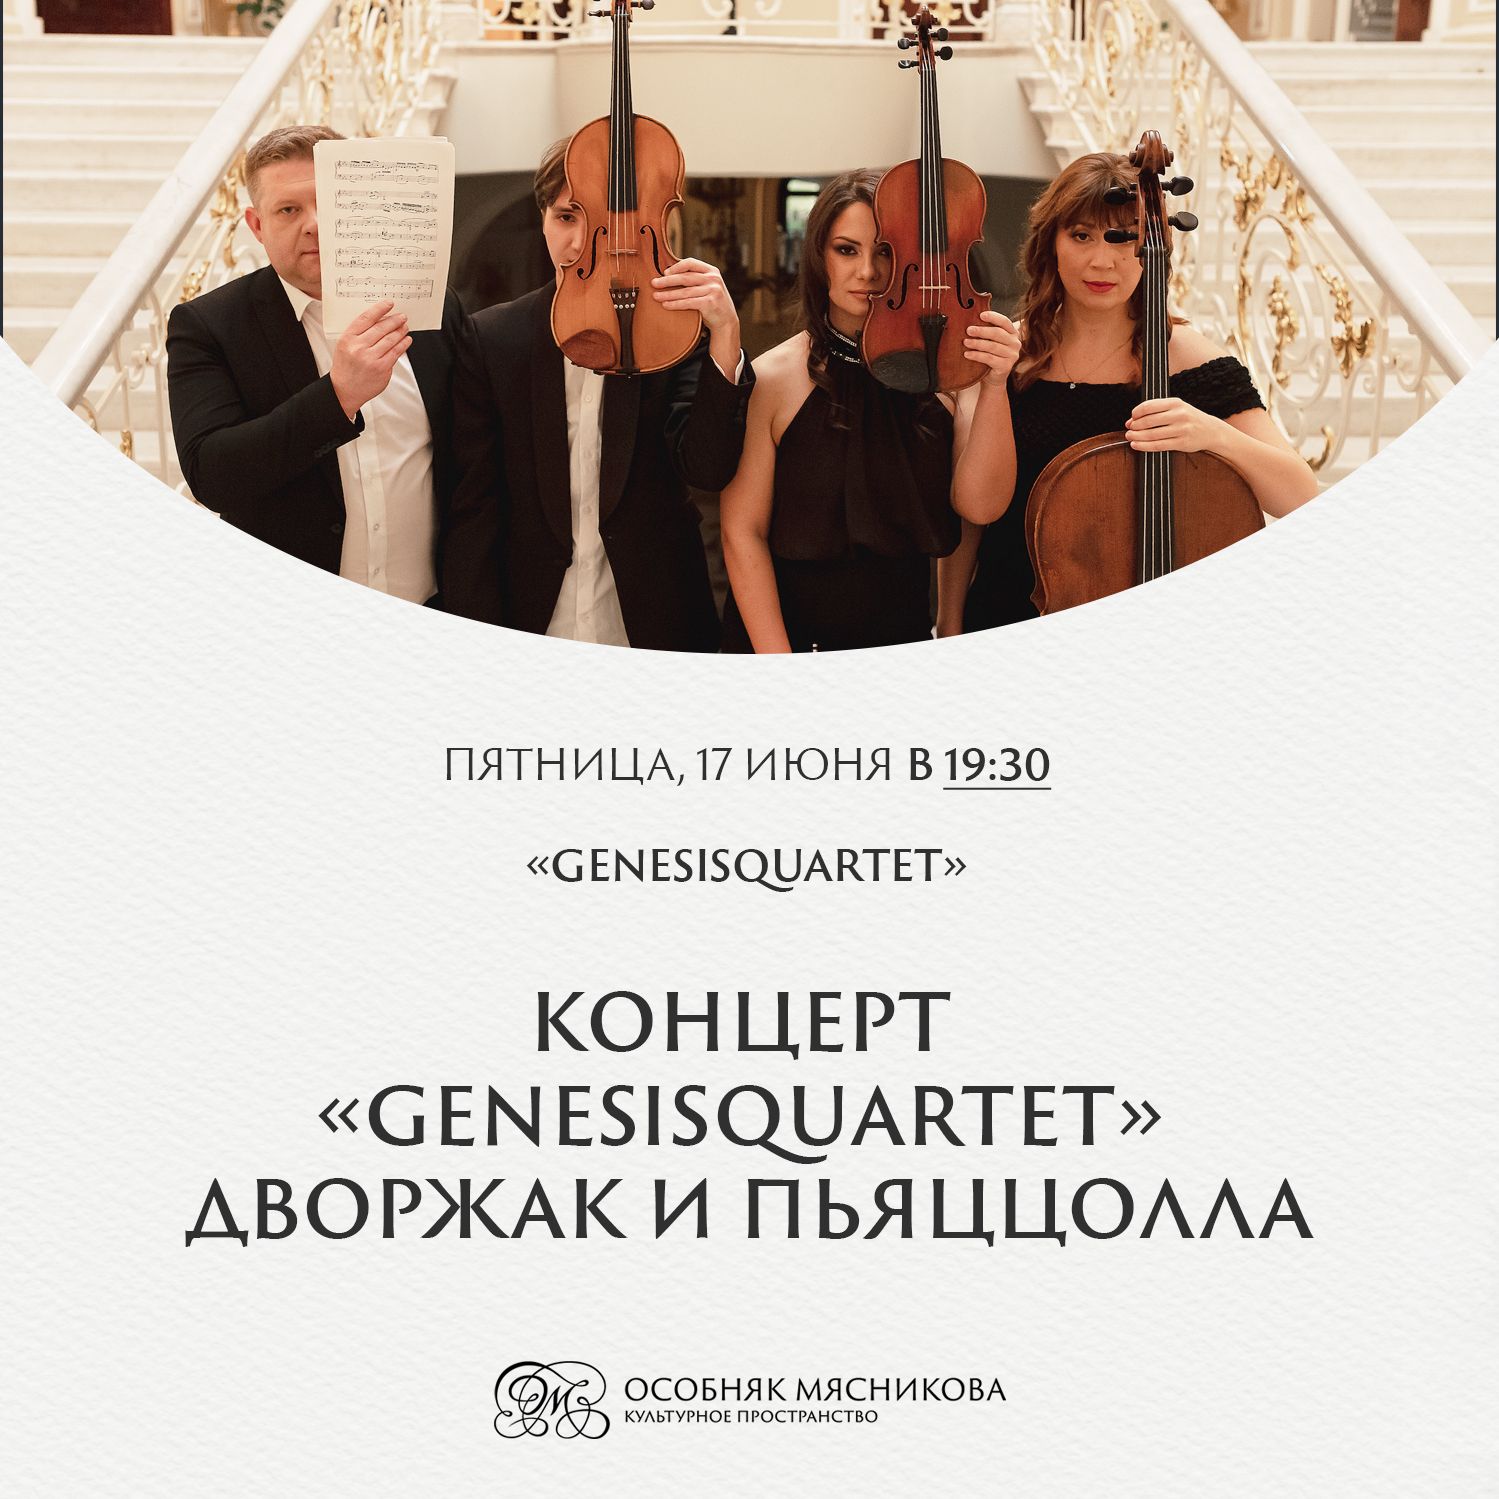 GenesisQuartet выступит в Санкт-Петербурге